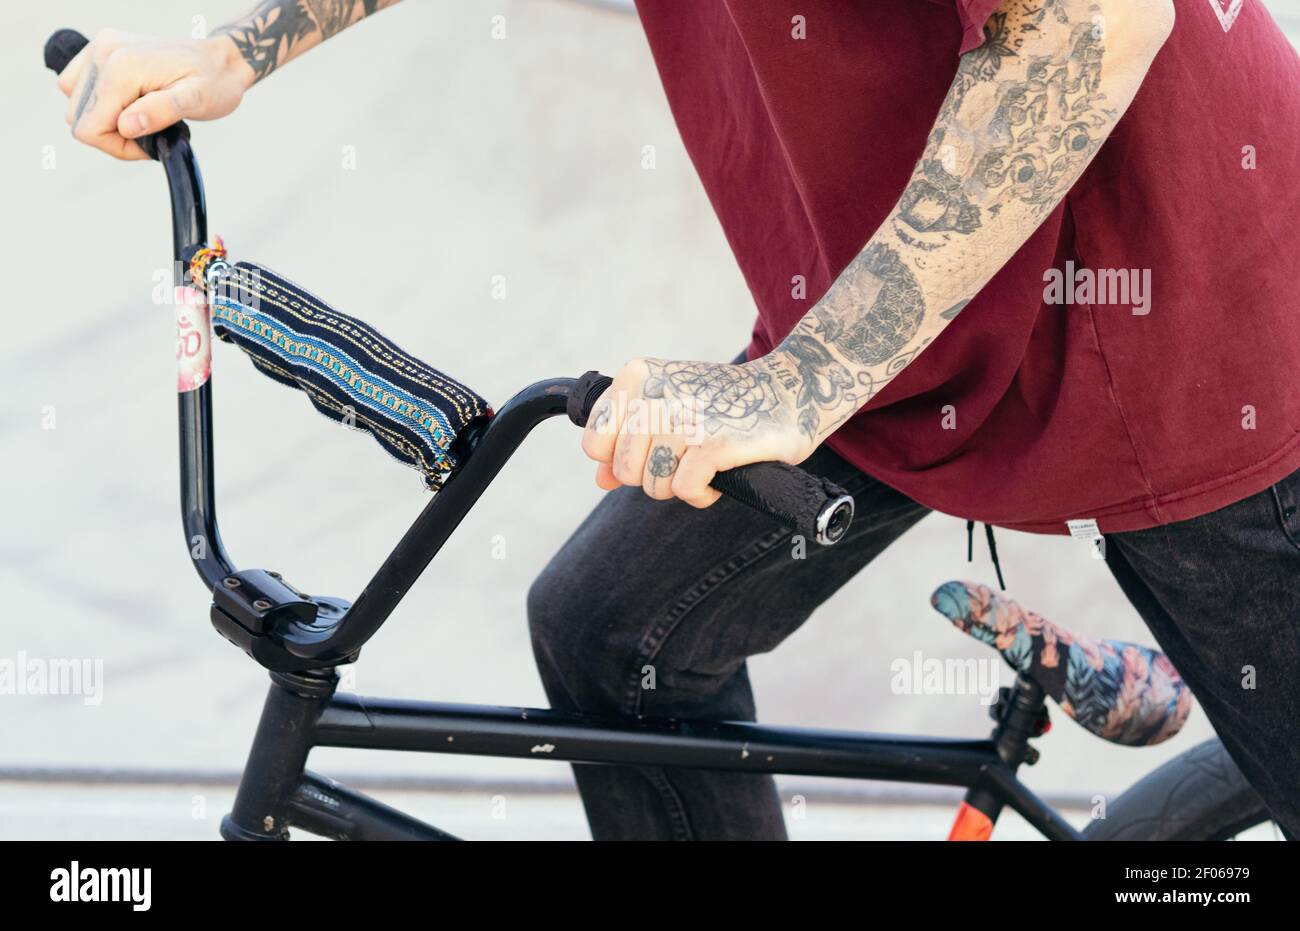 Retrato Del Hombre Adulto Joven Tatuado En La Bici De BMX Foto de archivo -  Imagen de extremo, tatuado: 135334216